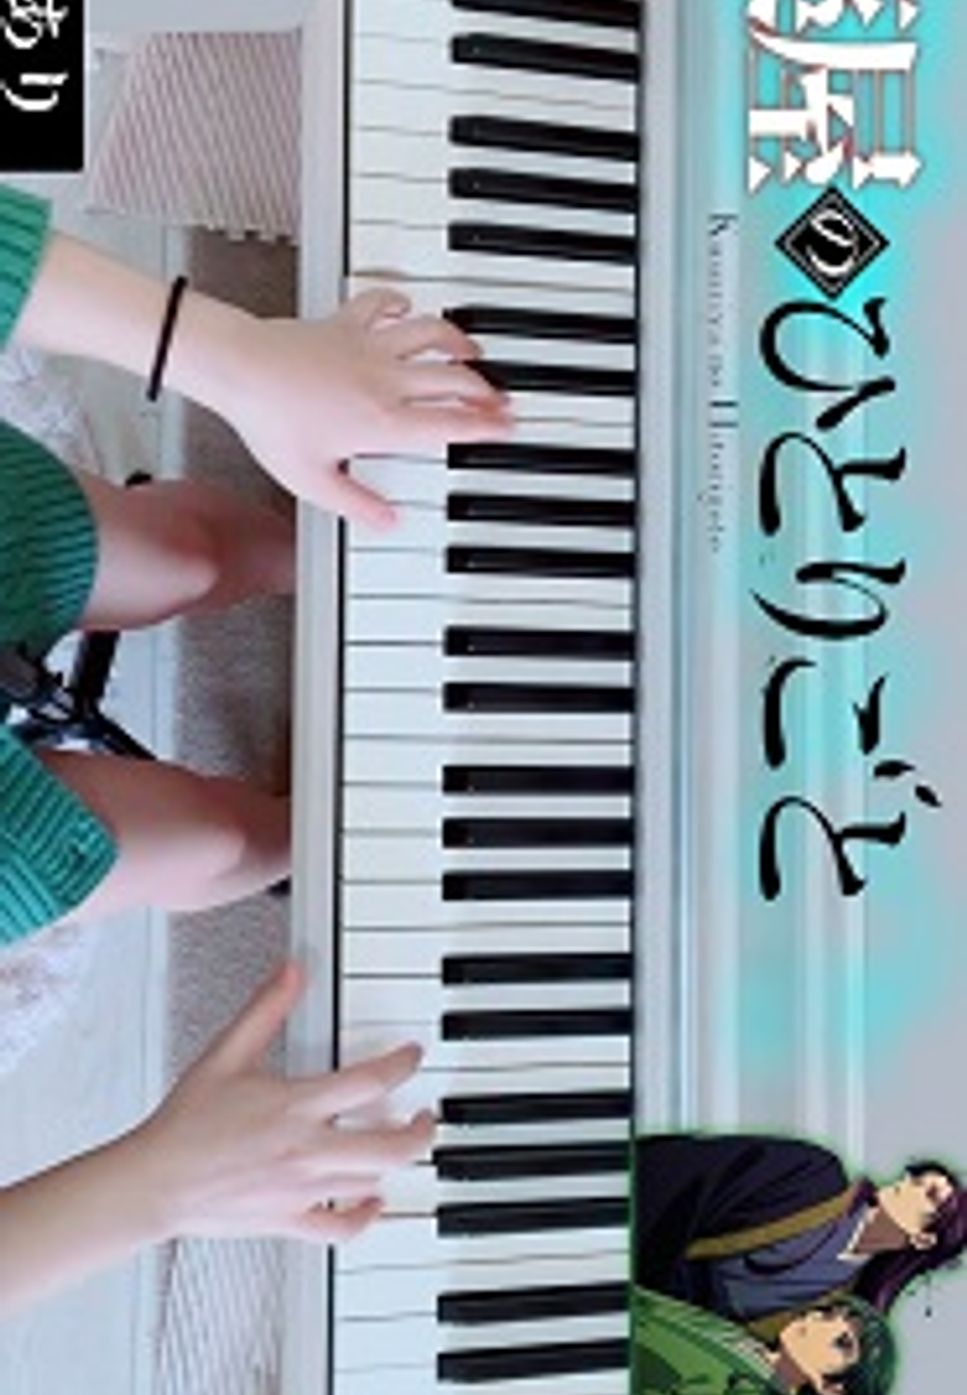 Uru - アンビバレント (ピアノ中上級/薬屋のひとりごと/アニメサイズ/主題歌) by utamenma